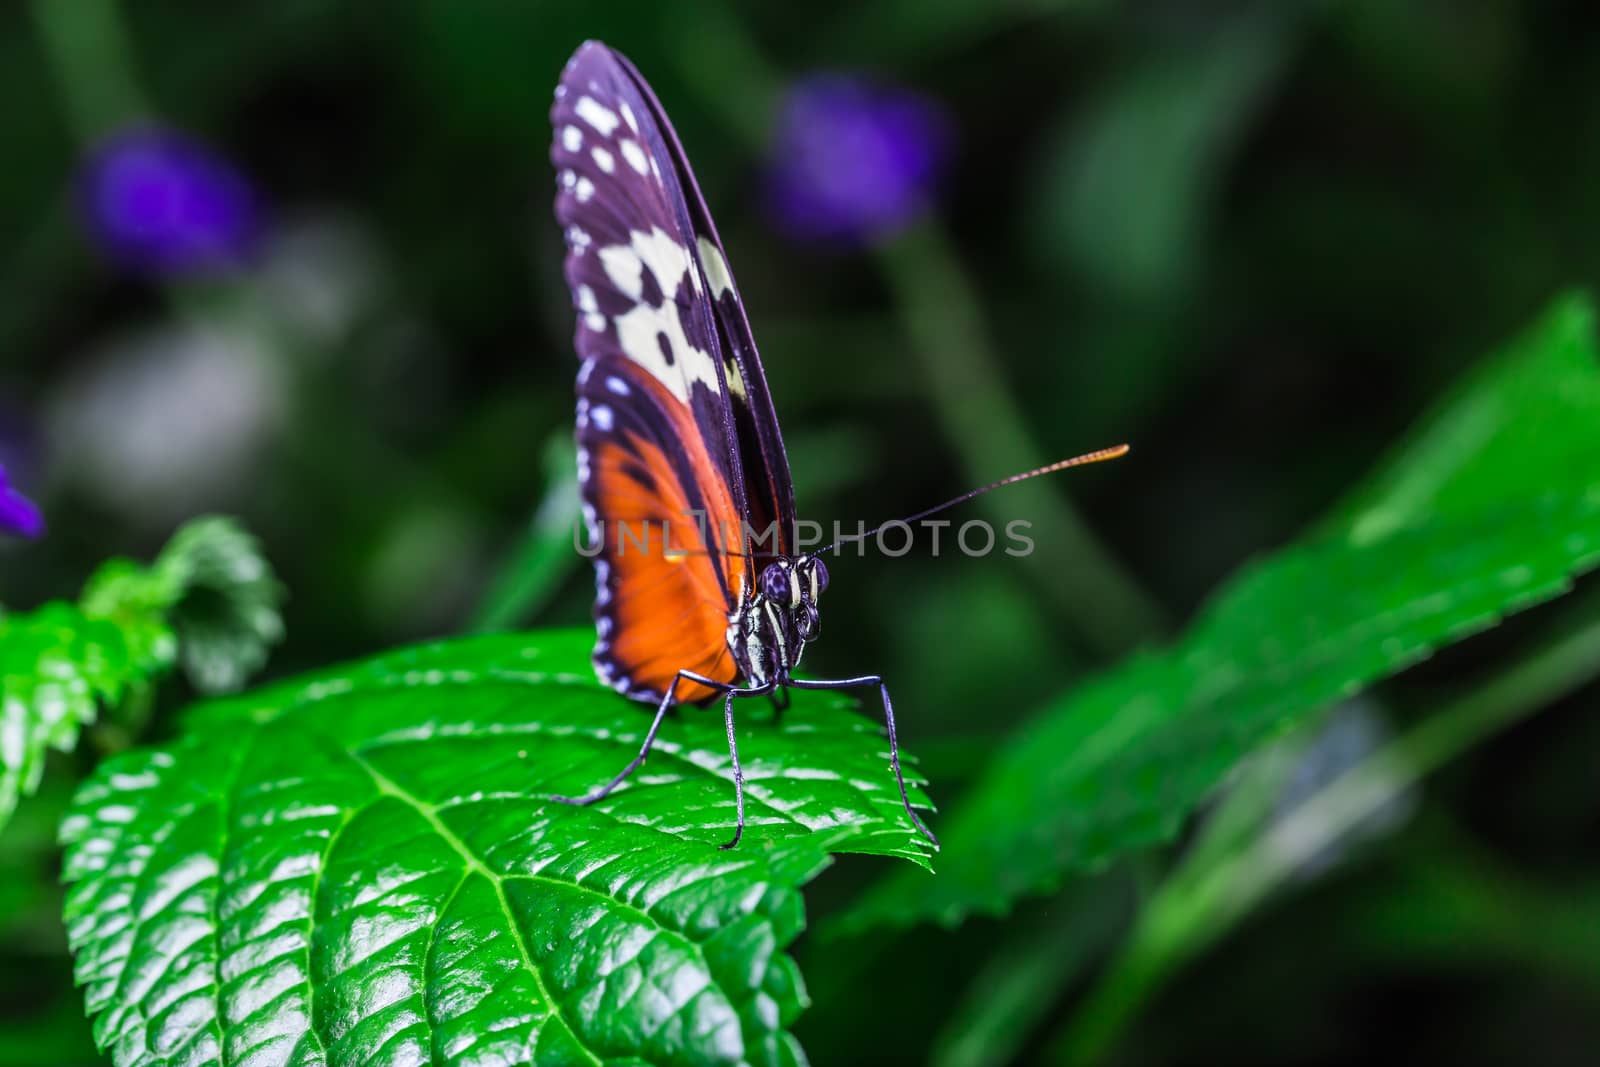 A beautiful butterfly on a flower by petkolophoto